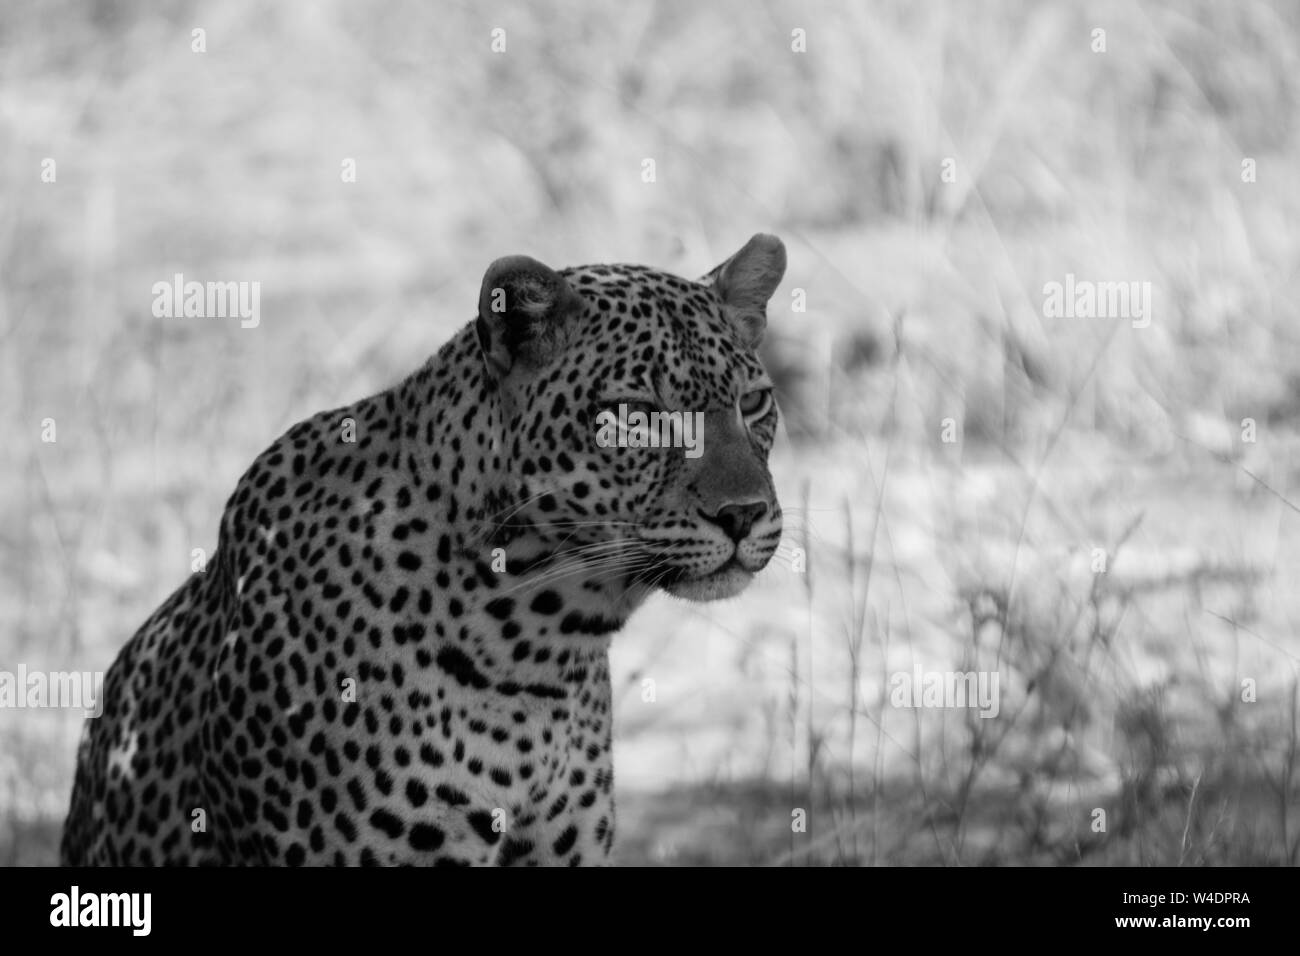 Bild von einem Leopard sein Territorium in Schwarz & Weiß Vermessung. Stockfoto